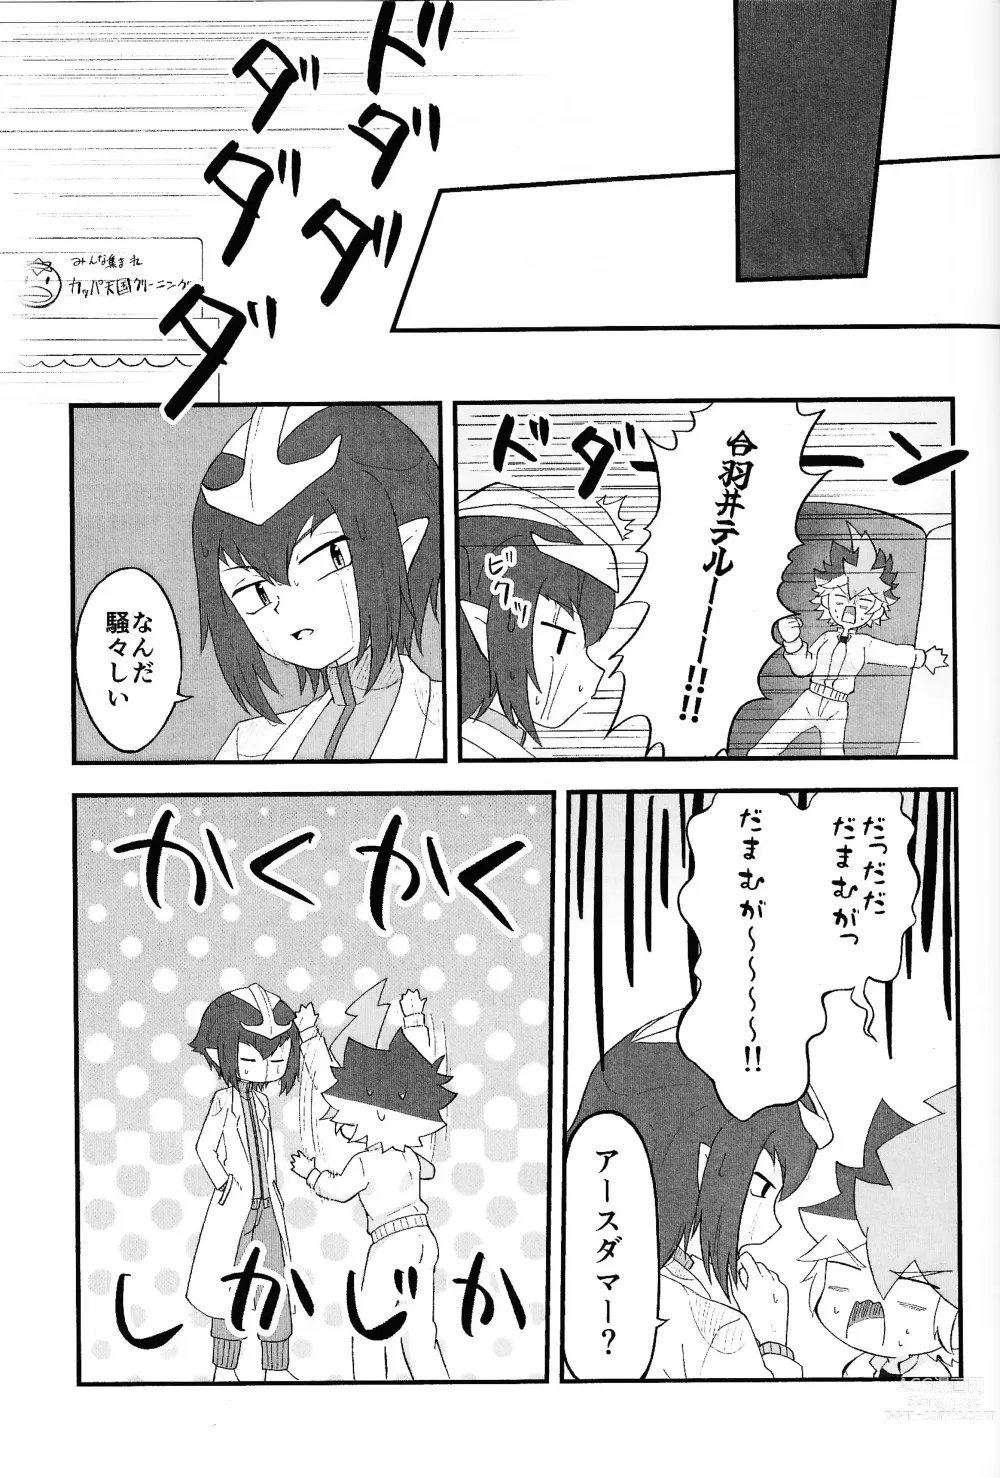 Page 4 of doujinshi Pandoranohako ka kindan no kajitsu ka